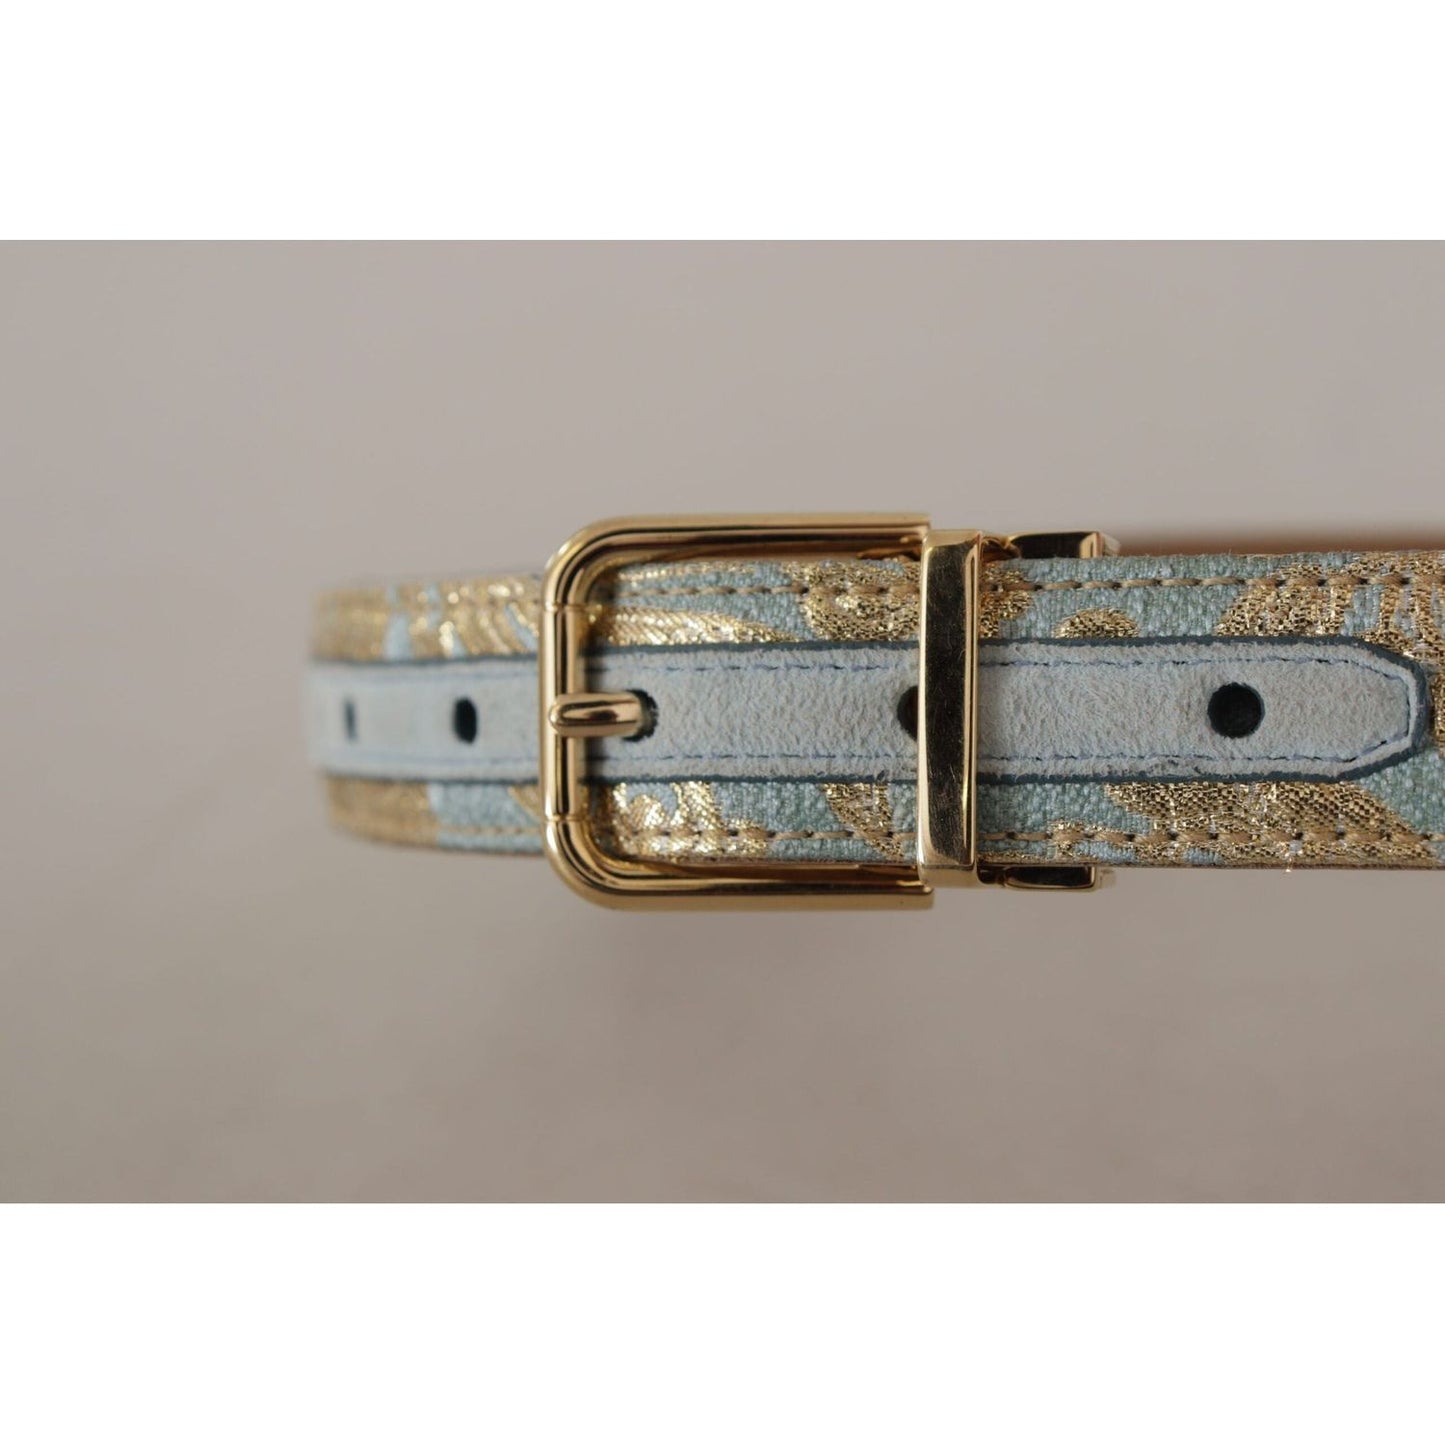 Dolce & Gabbana Elegant Light Blue Leather Belt with Gold Buckle blue-leather-jacquard-embossed-gold-metal-buckle-belt